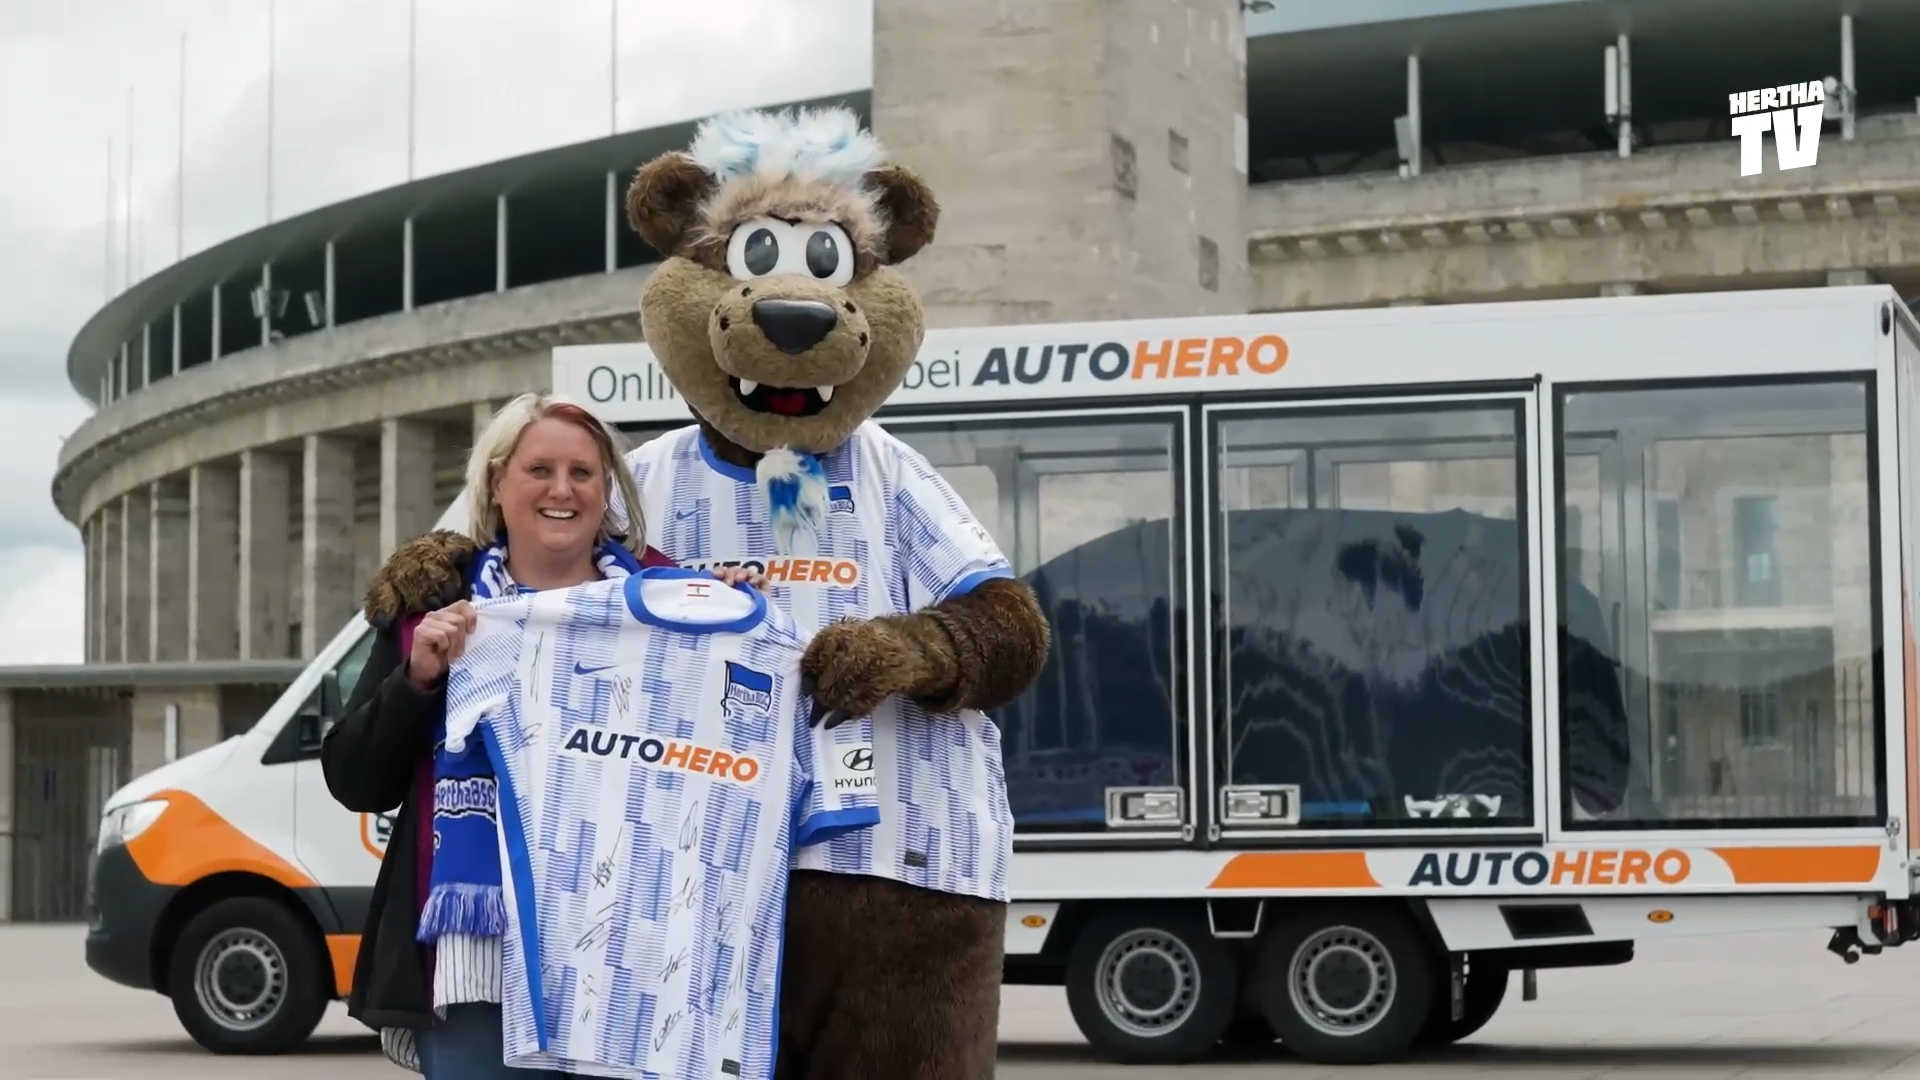 Herthinho posiert vor dem Olympiastadion mit der Gewinnerin des Autohero-Gewinnspiels.